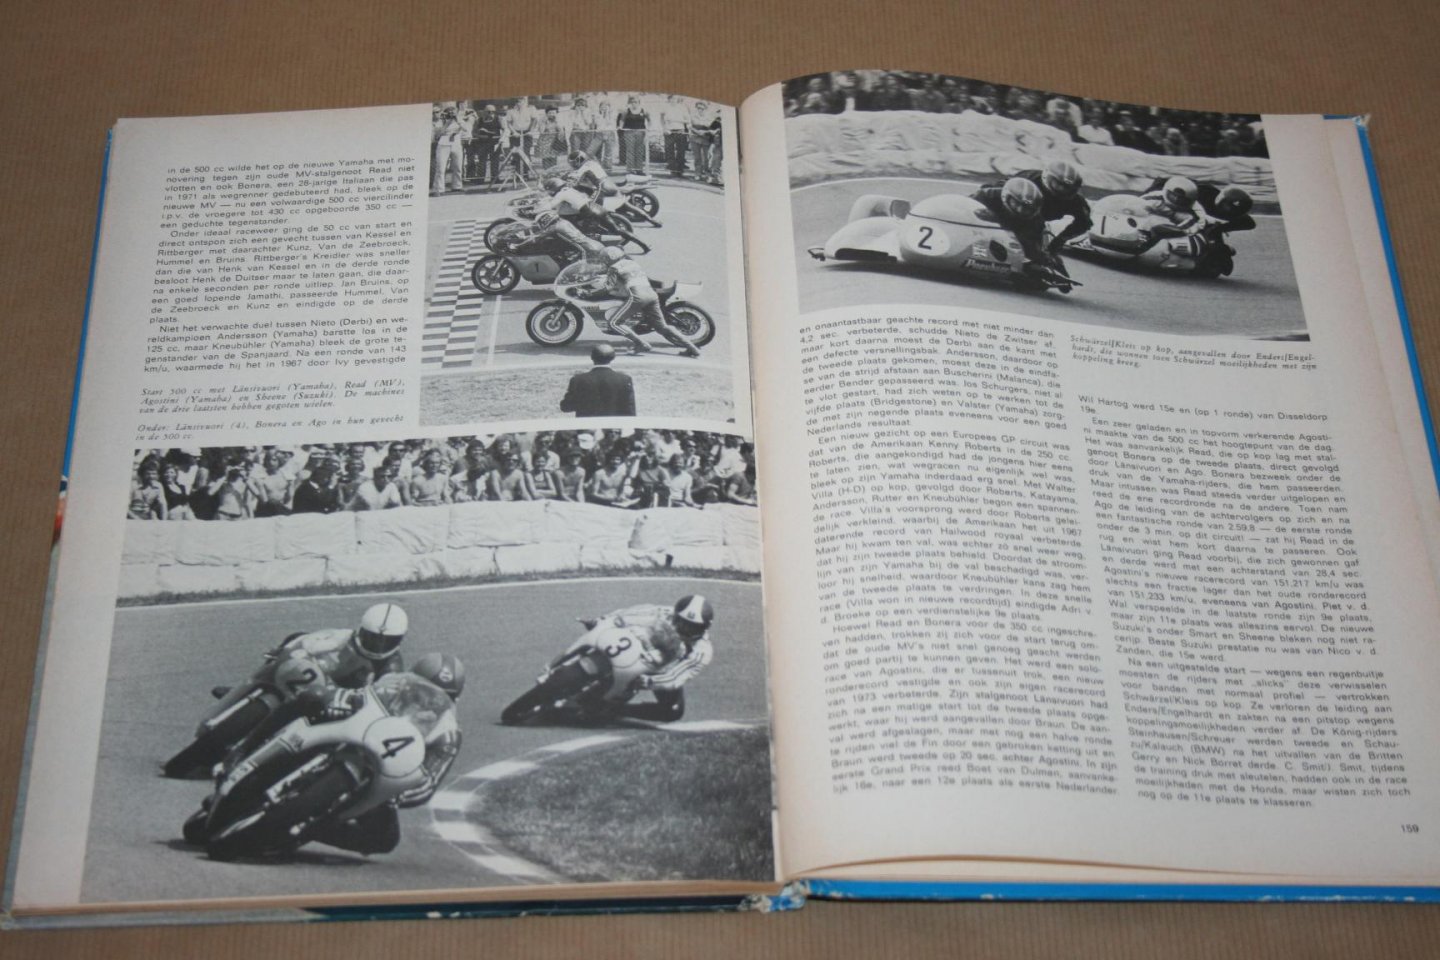 Han Harmsze - 50 jaar TT  --  De geschiedenis van Nederlands grootste sportevenement 1925-1975